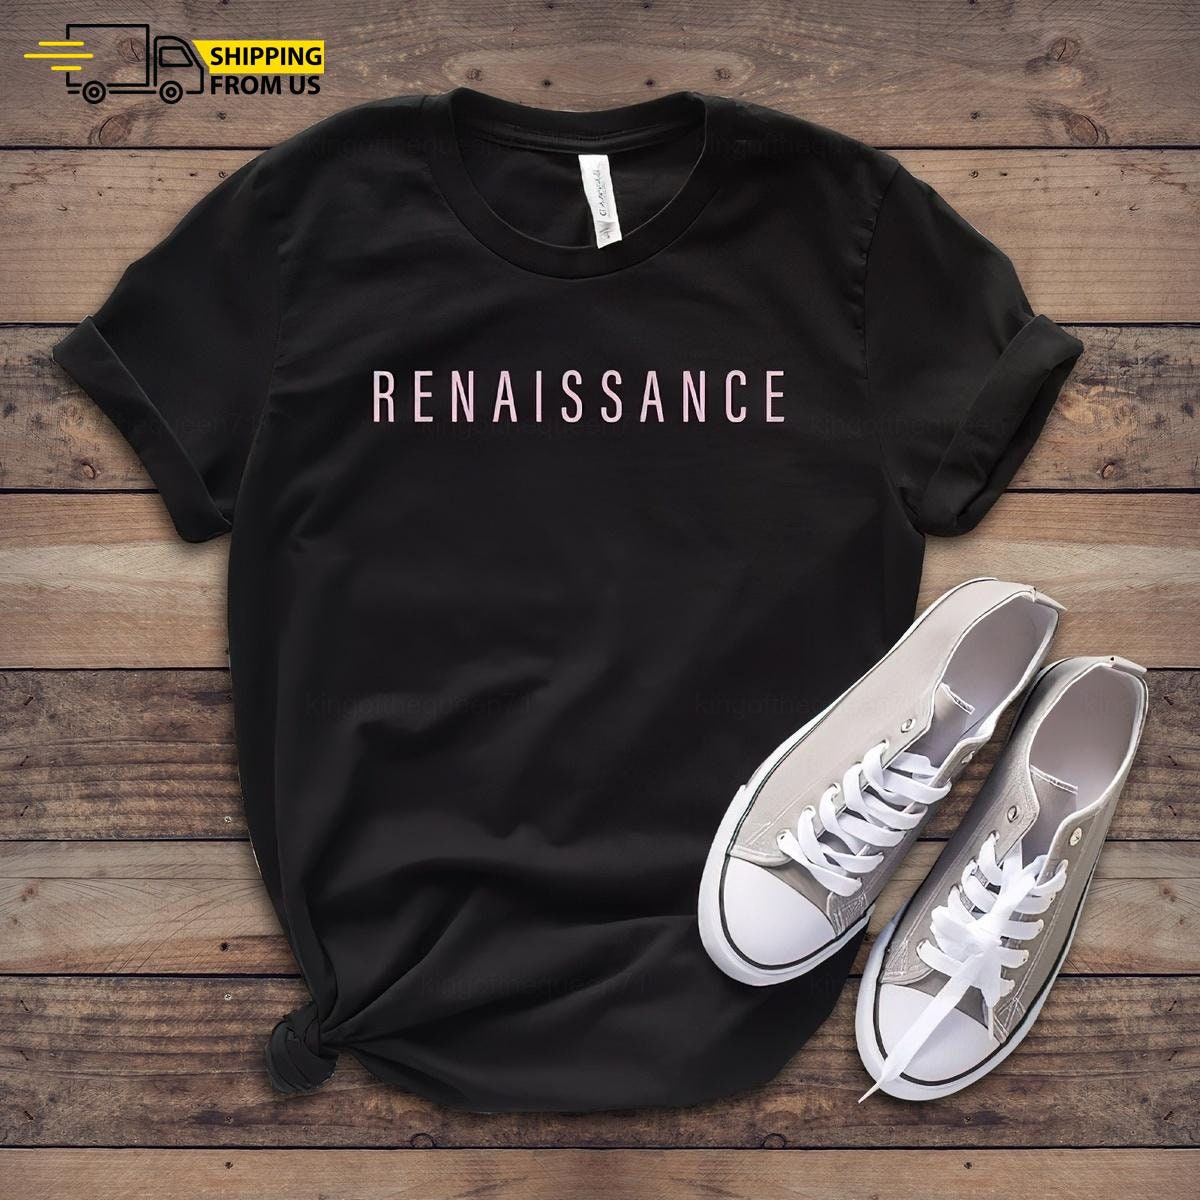 Renaissance Tour T-shirt, Beyonc Tour, Renaissance